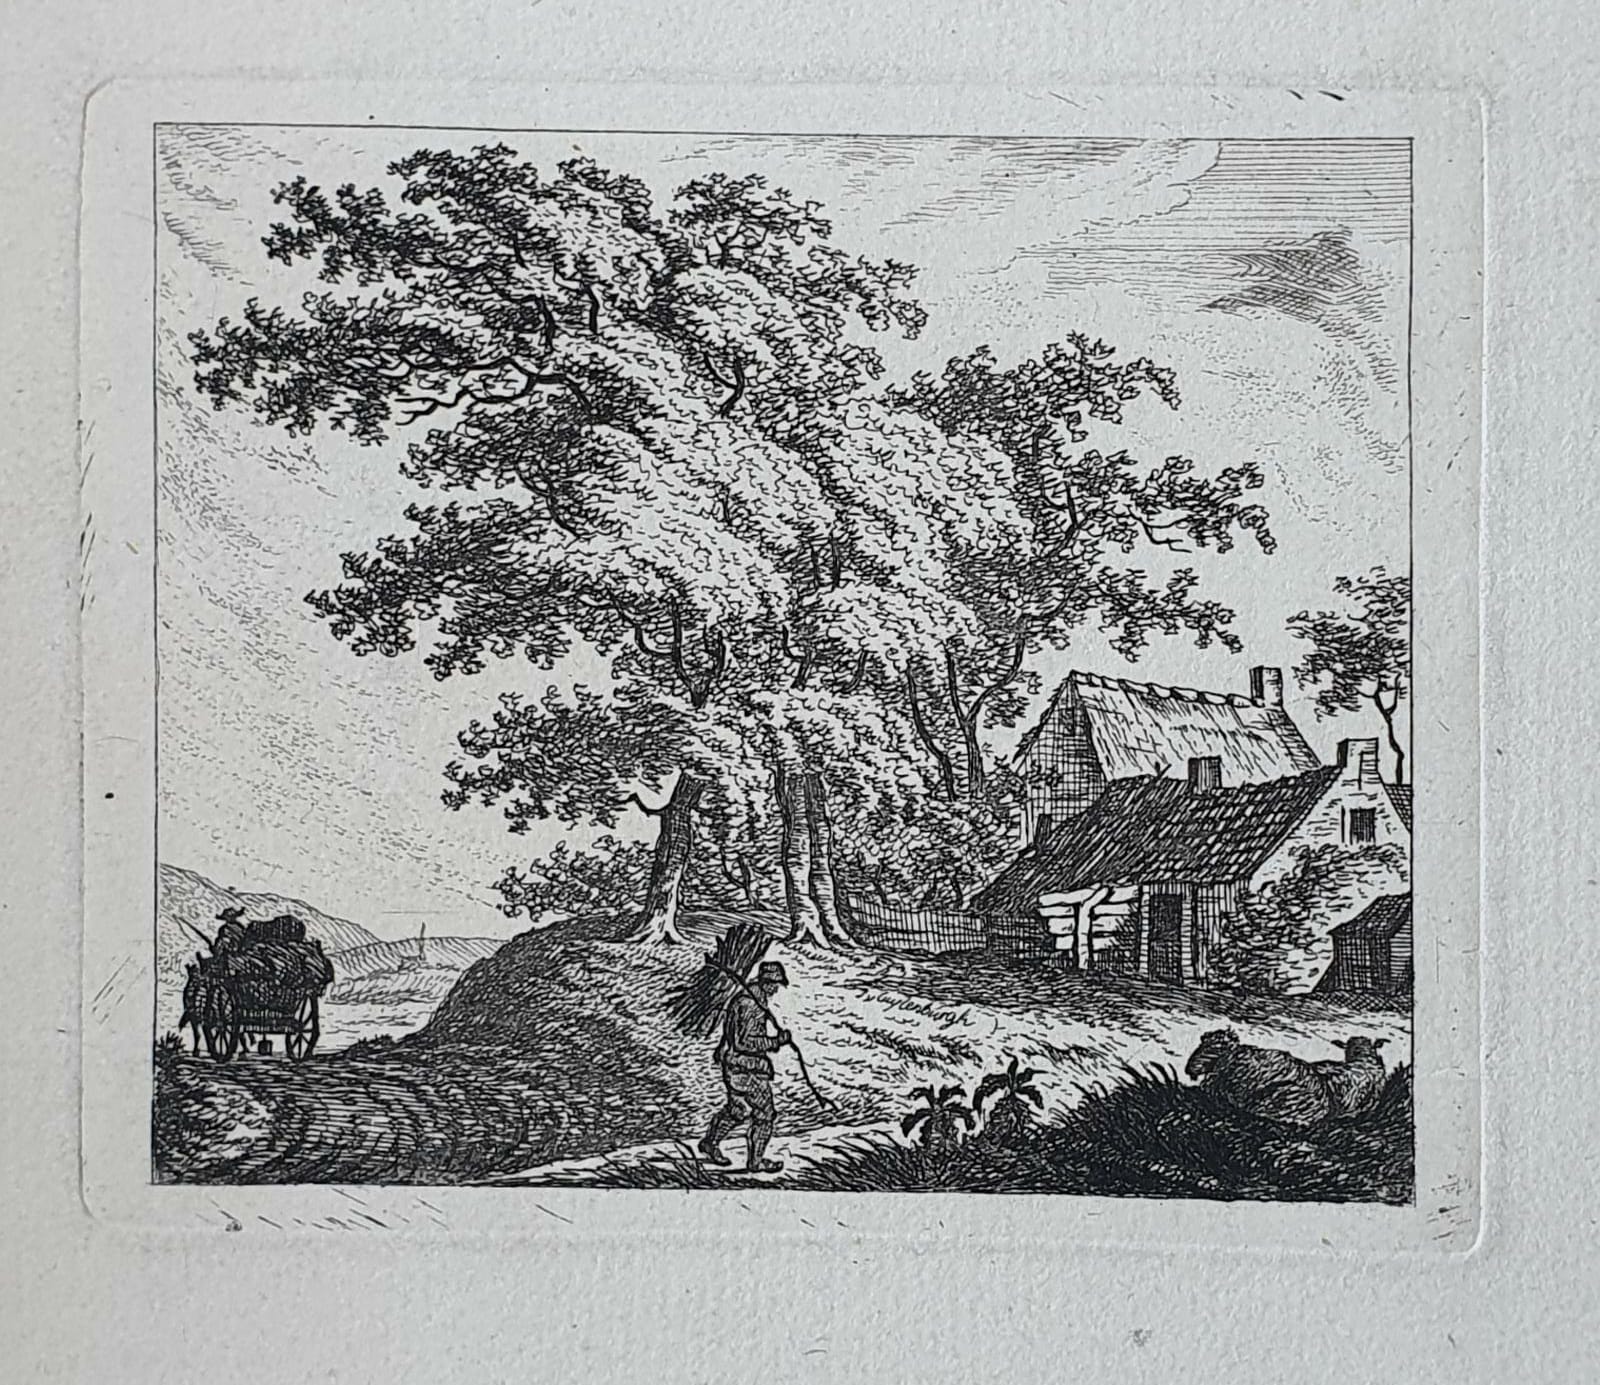 [Original etching, ets] J.E. v. Cuylenburgh. Landscape with wayfarer, published 1800-1850.